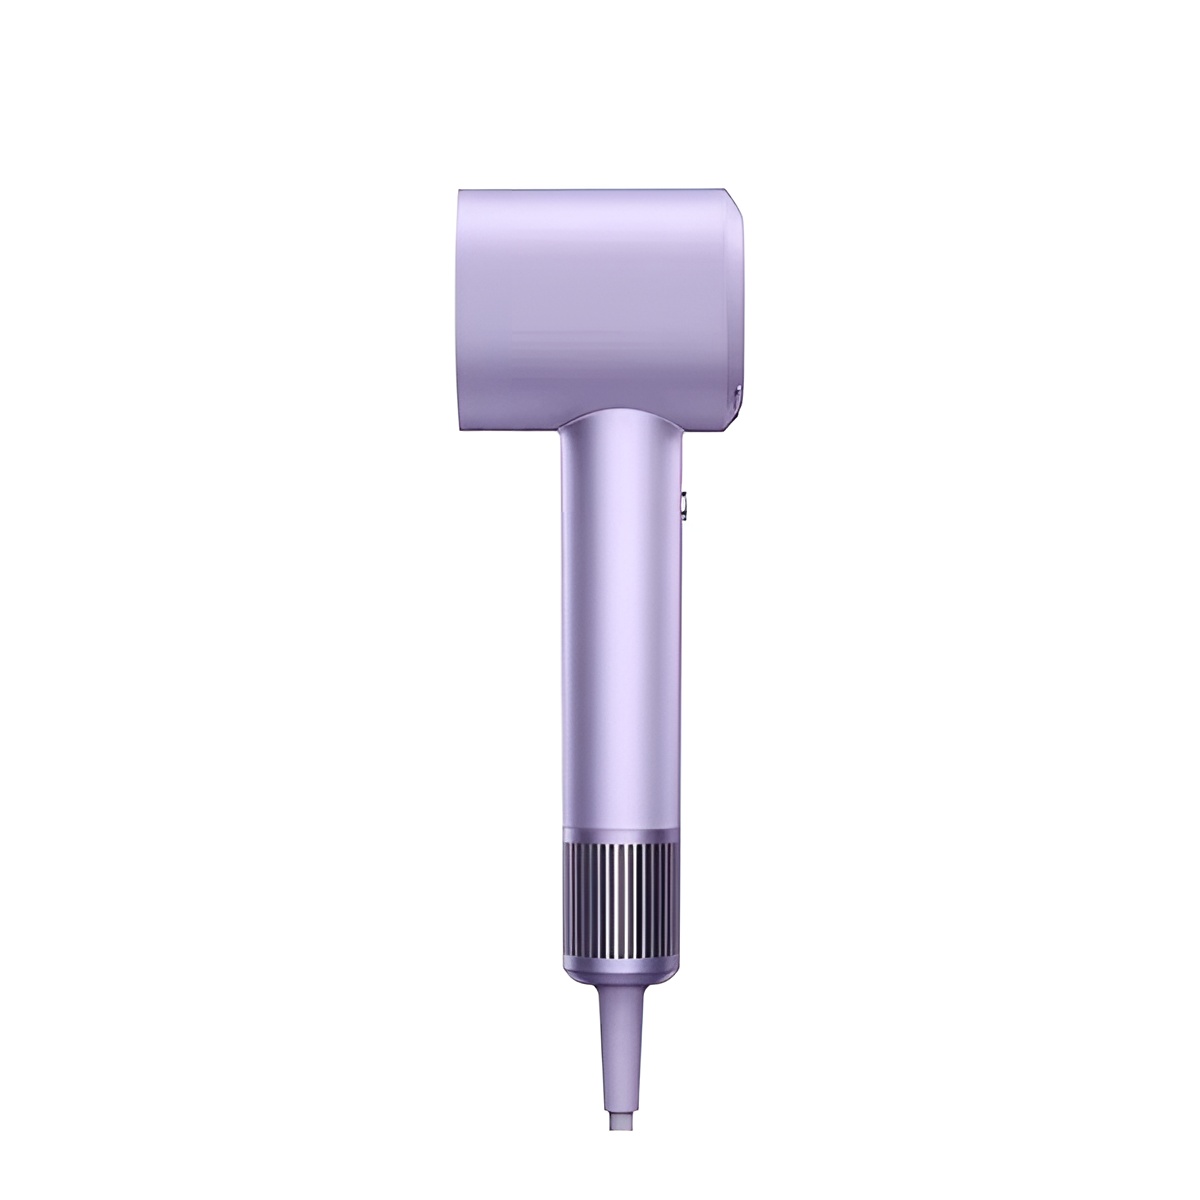 Фен Mijia H701 1600 Вт фиолетовый карандаш derwent procolour фиолетовый мягкий